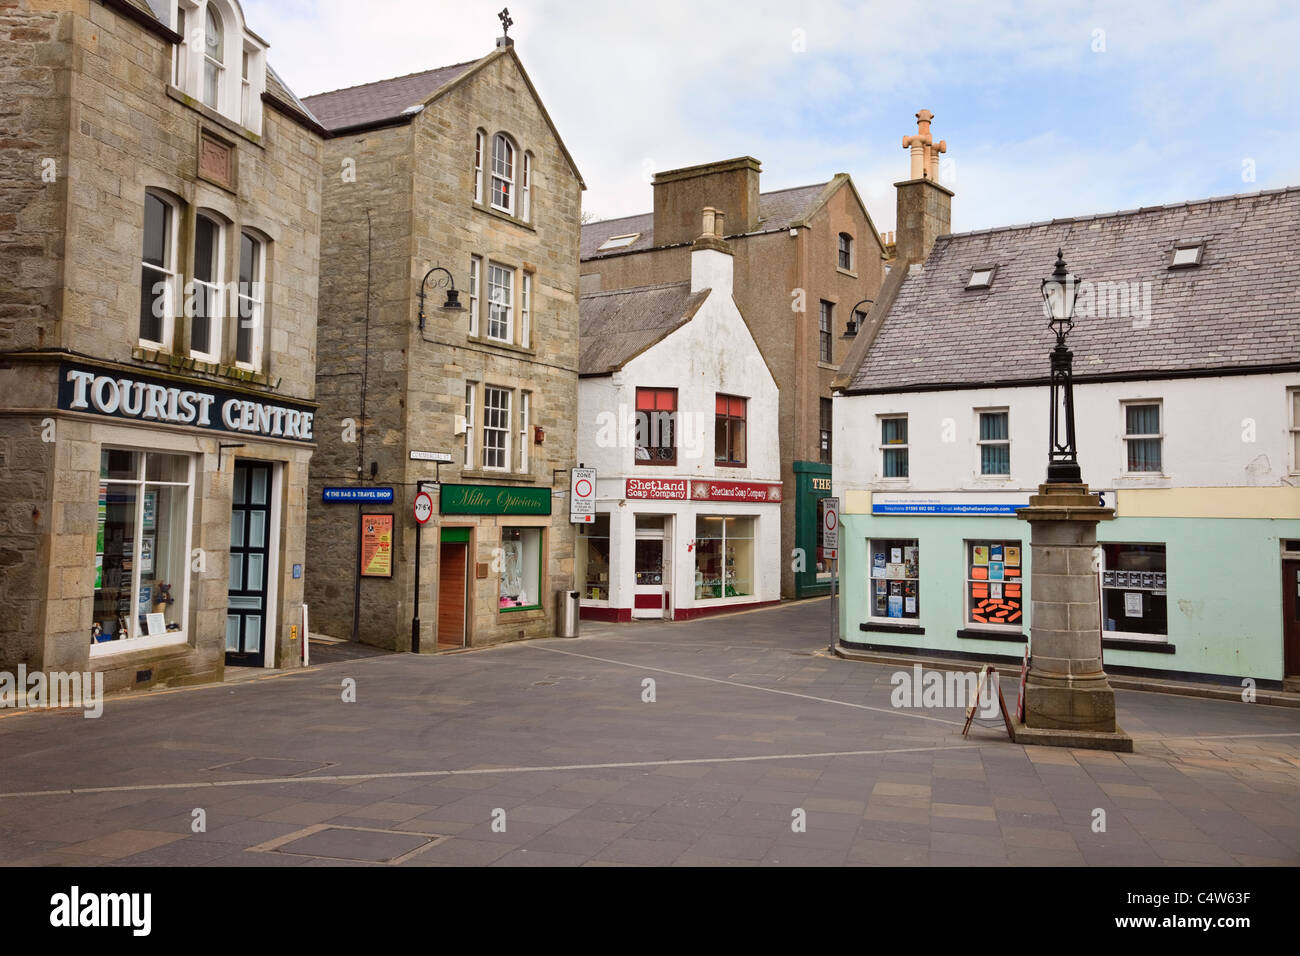 Les boutiques du marché et centre d'information touristique de la place de la ville. Lerwick, Shetland, Scotland, UK, Grande-Bretagne Banque D'Images